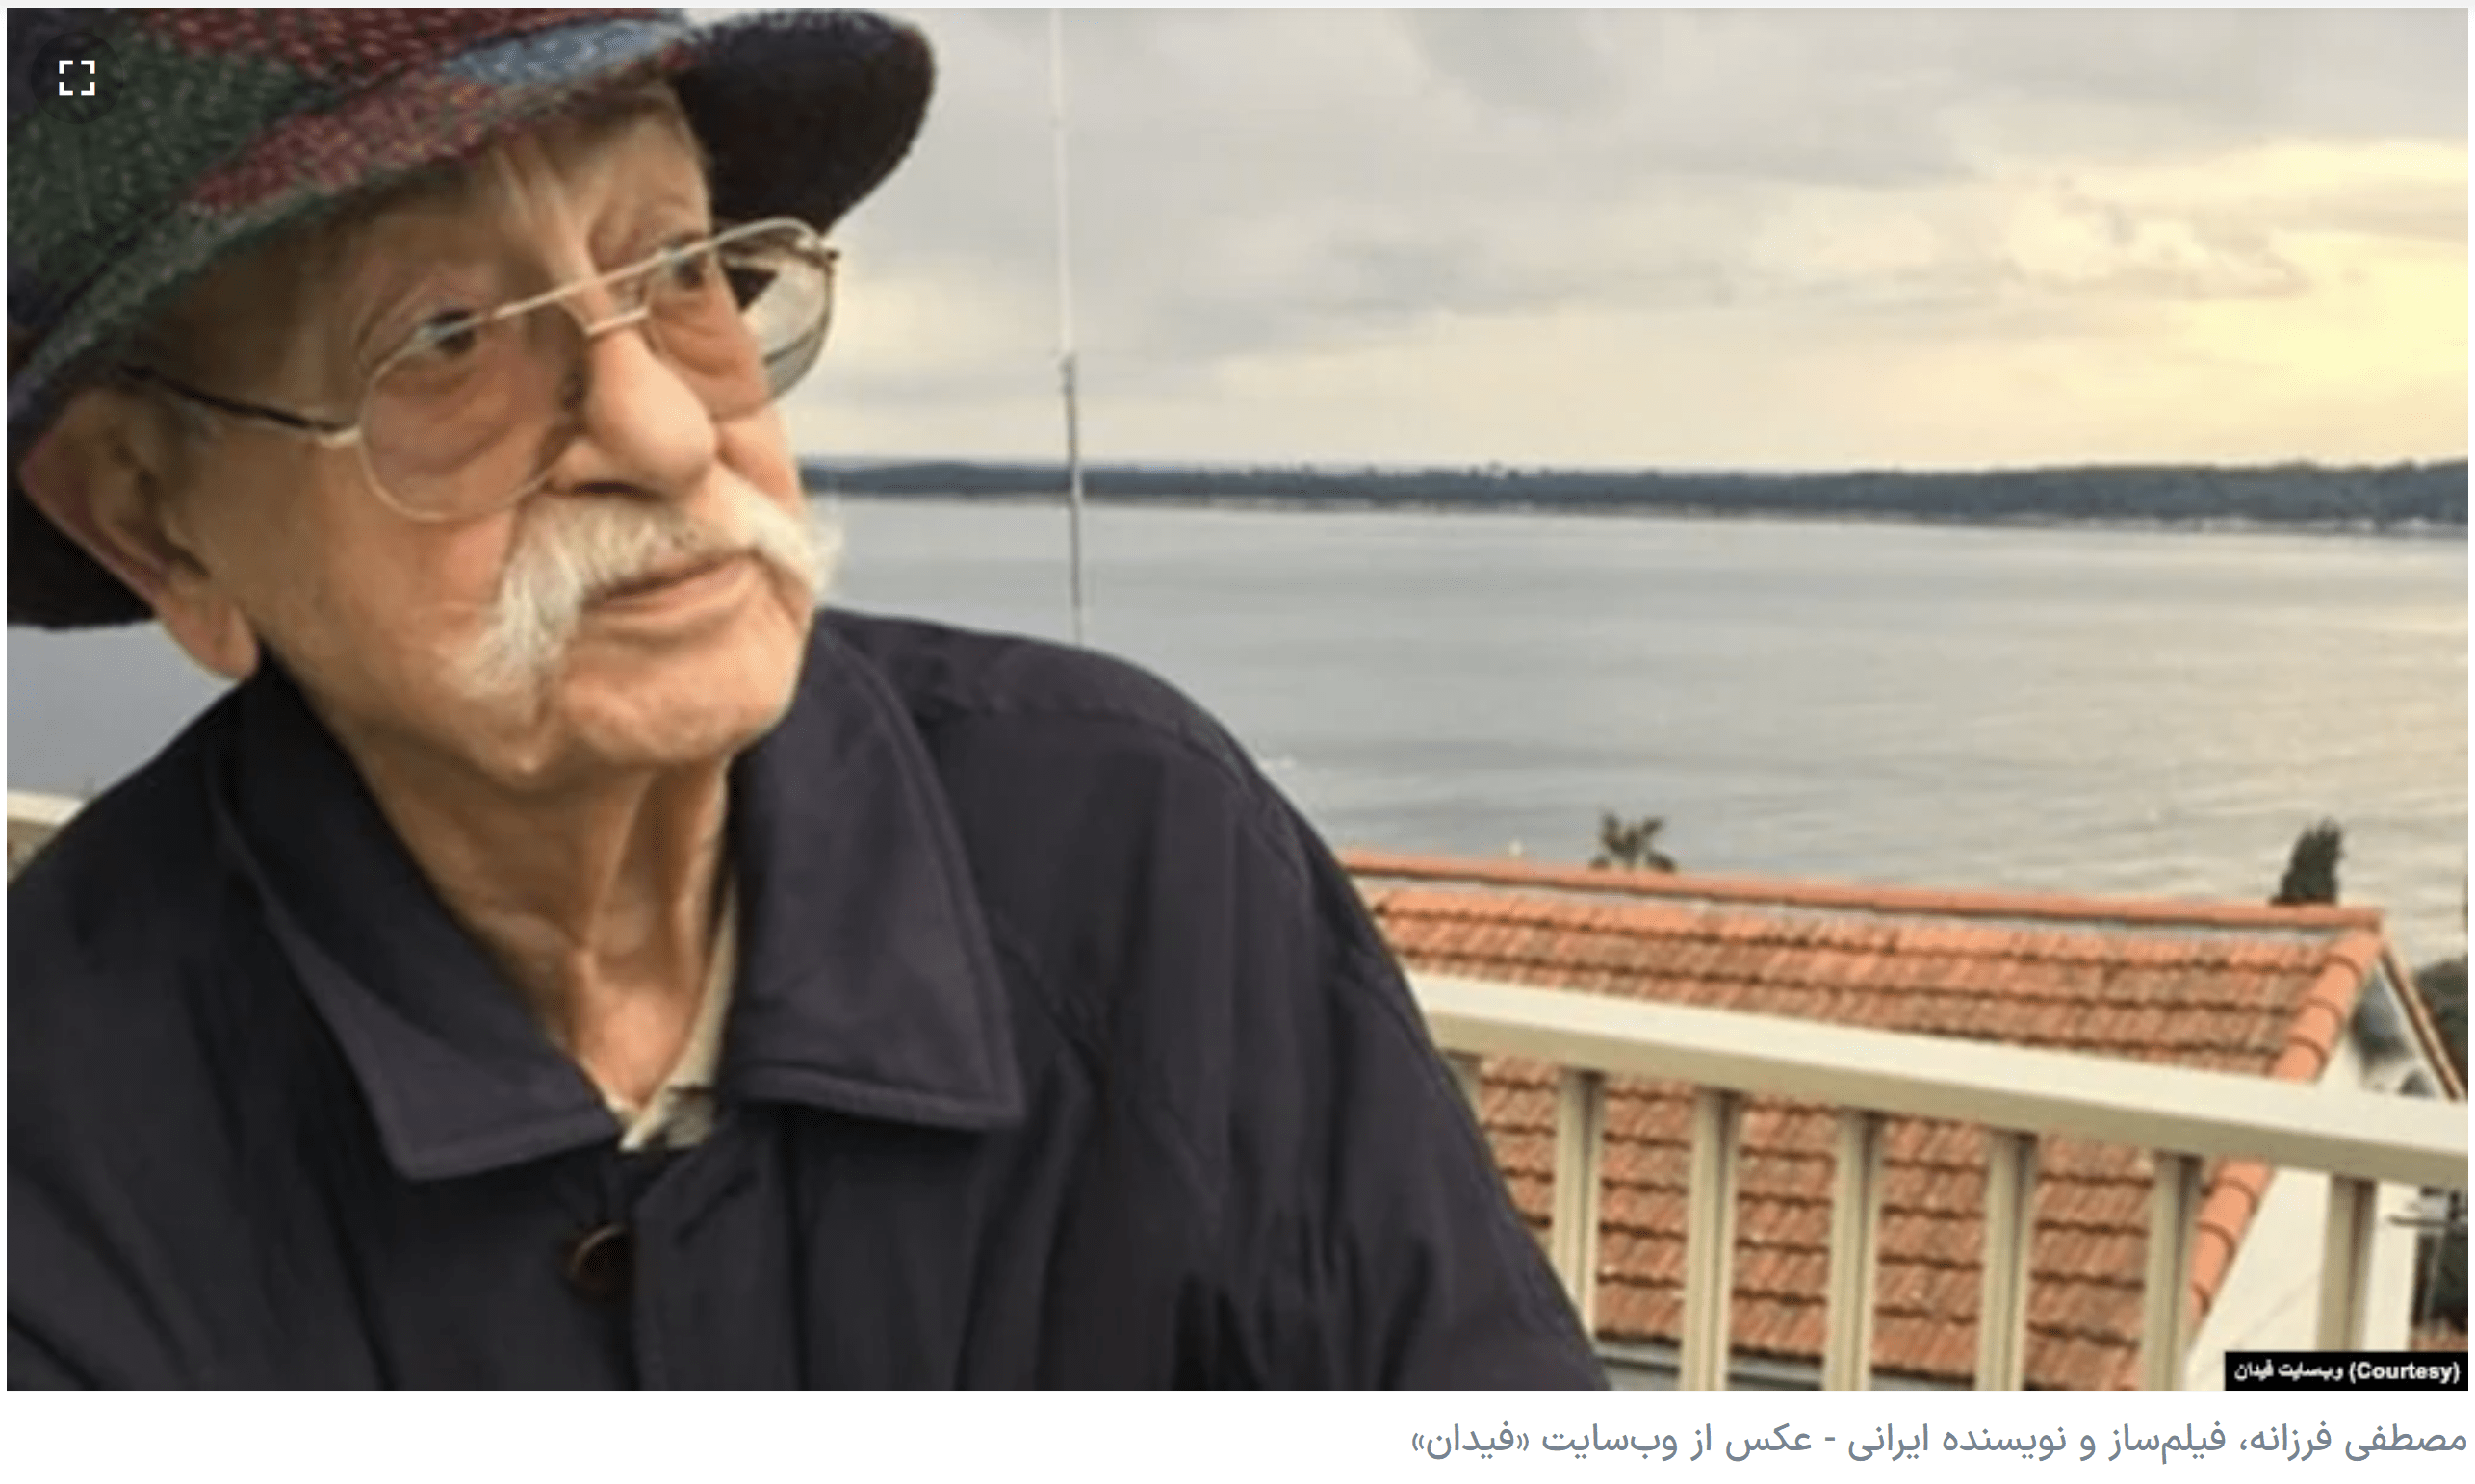 مصطفی فرزانه نویسنده و فیلمساز ایرانی در پاریس درگذشت